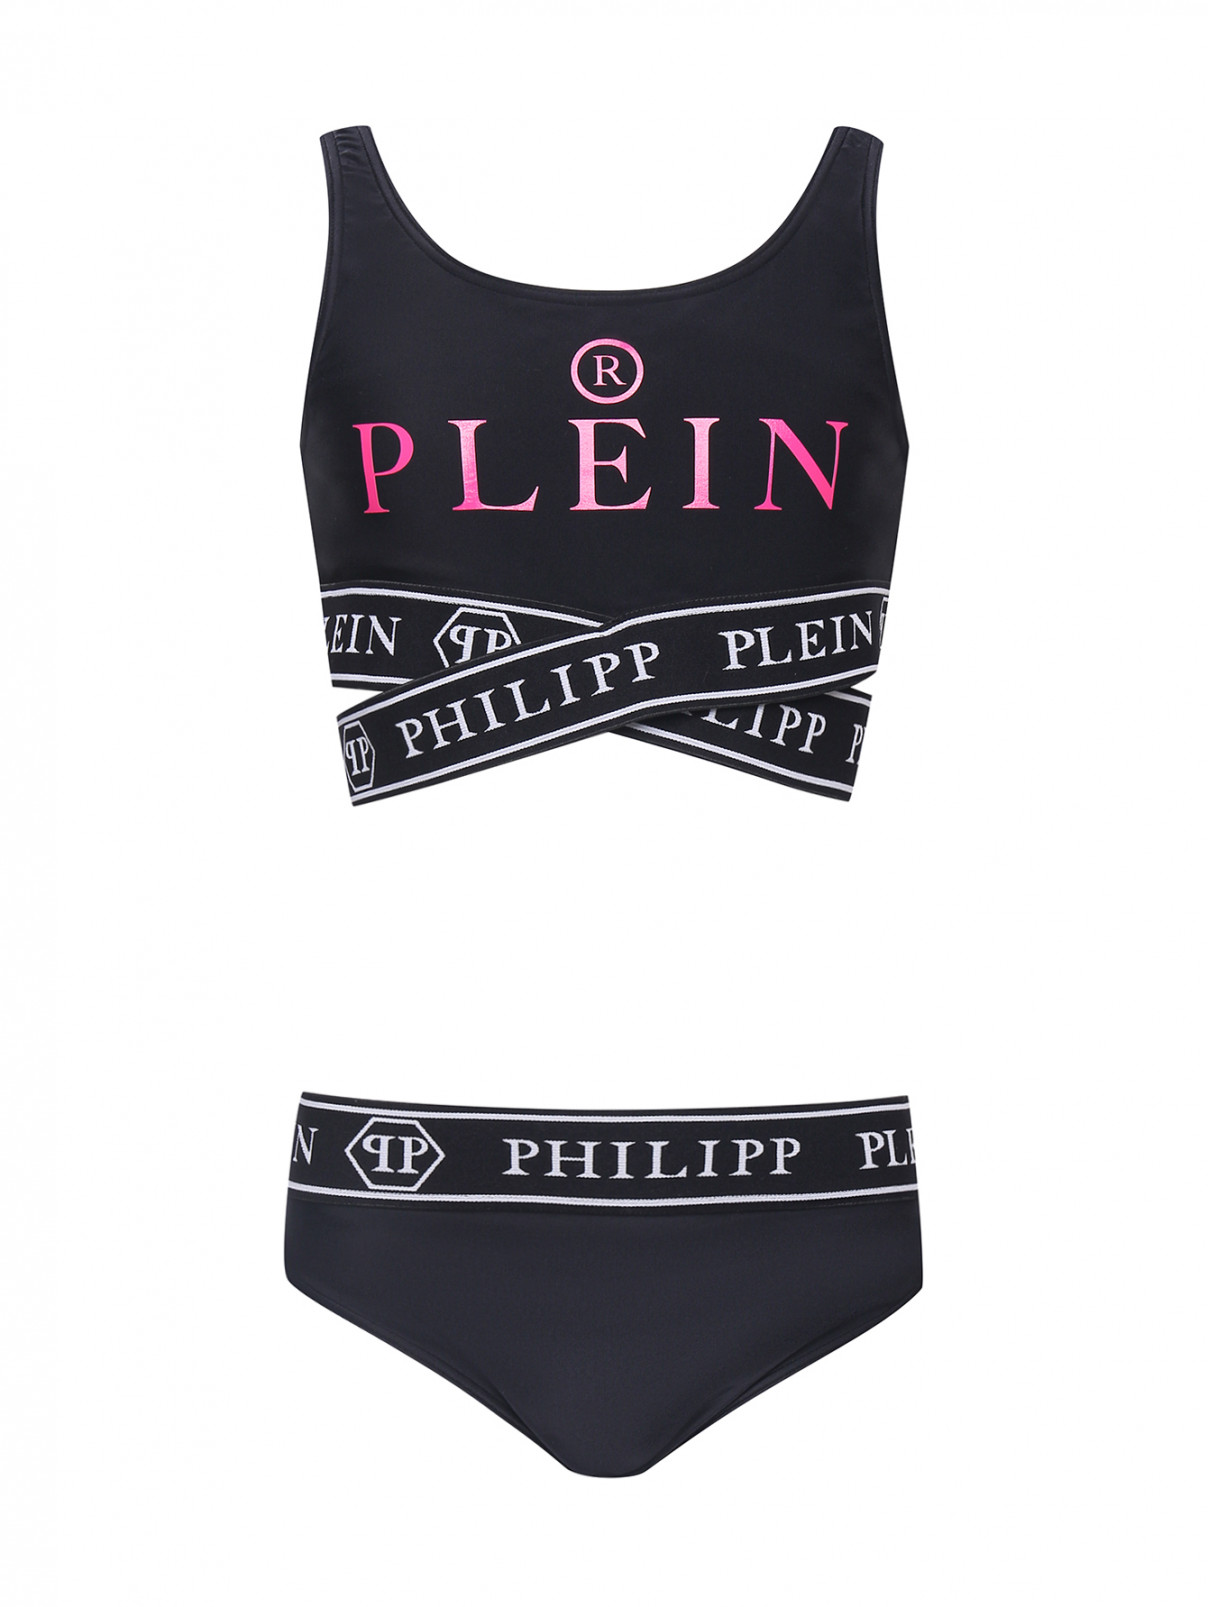 Раздельный купальник с принтом Philipp Plein  –  Общий вид  – Цвет:  Черный